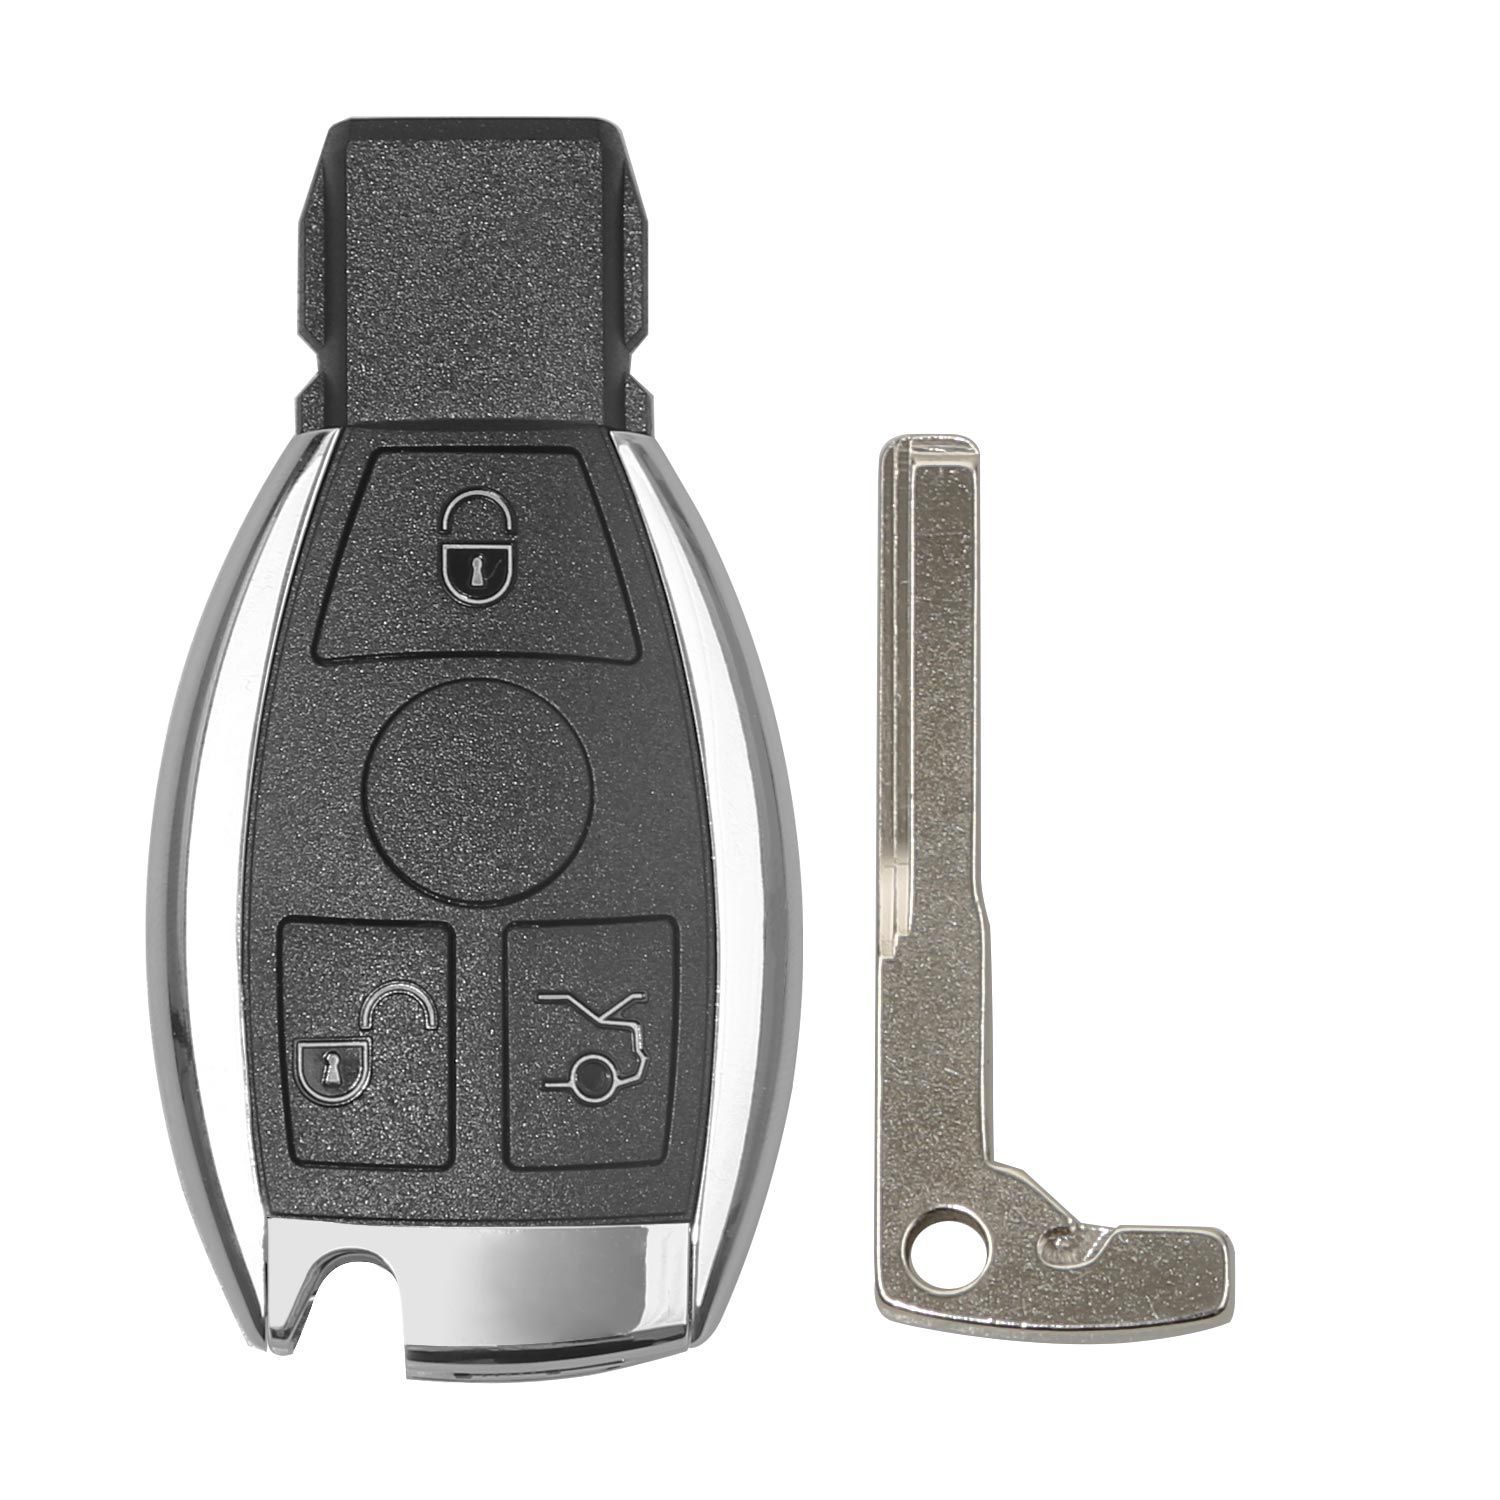 5pcs Xhorse VVDI BE Key Pro mit Smart Key Shell 3 Tasten für Mercedes Benz Holen Sie sich 5 Free Token für VVDI MB Tool